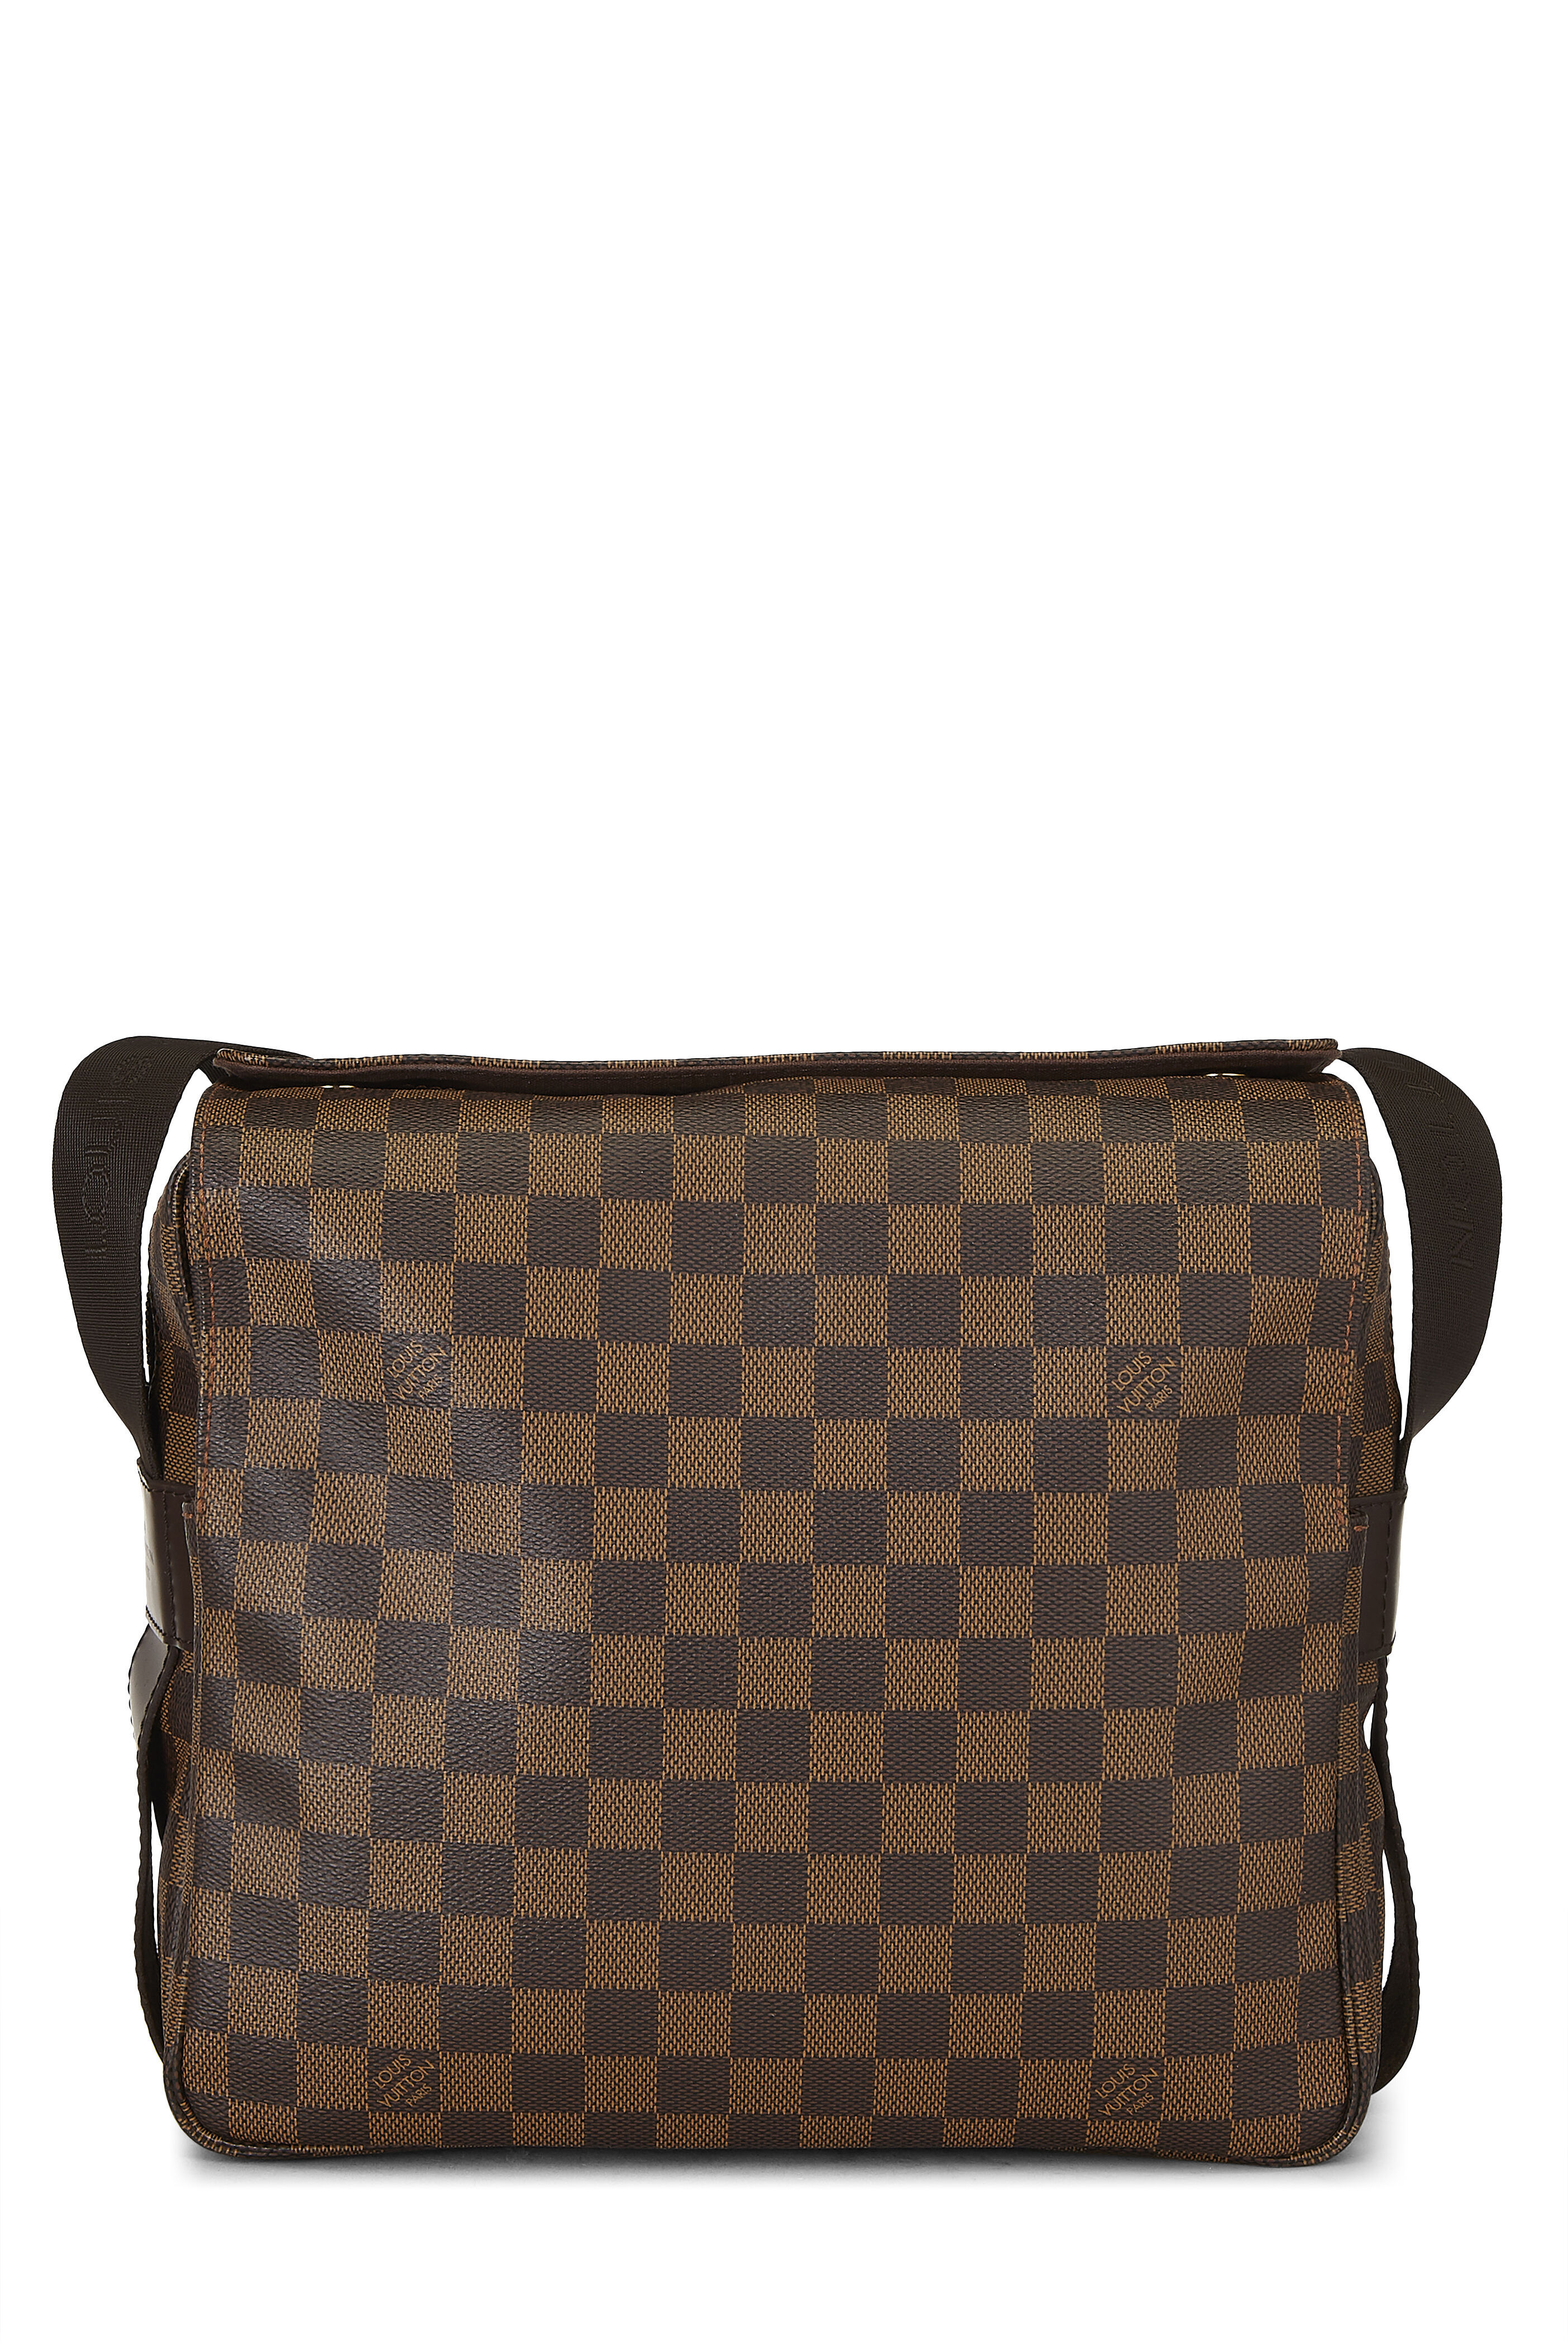 Louis Vuitton Damier Azur Naviglio N51189 Bag Shoulder Unisex